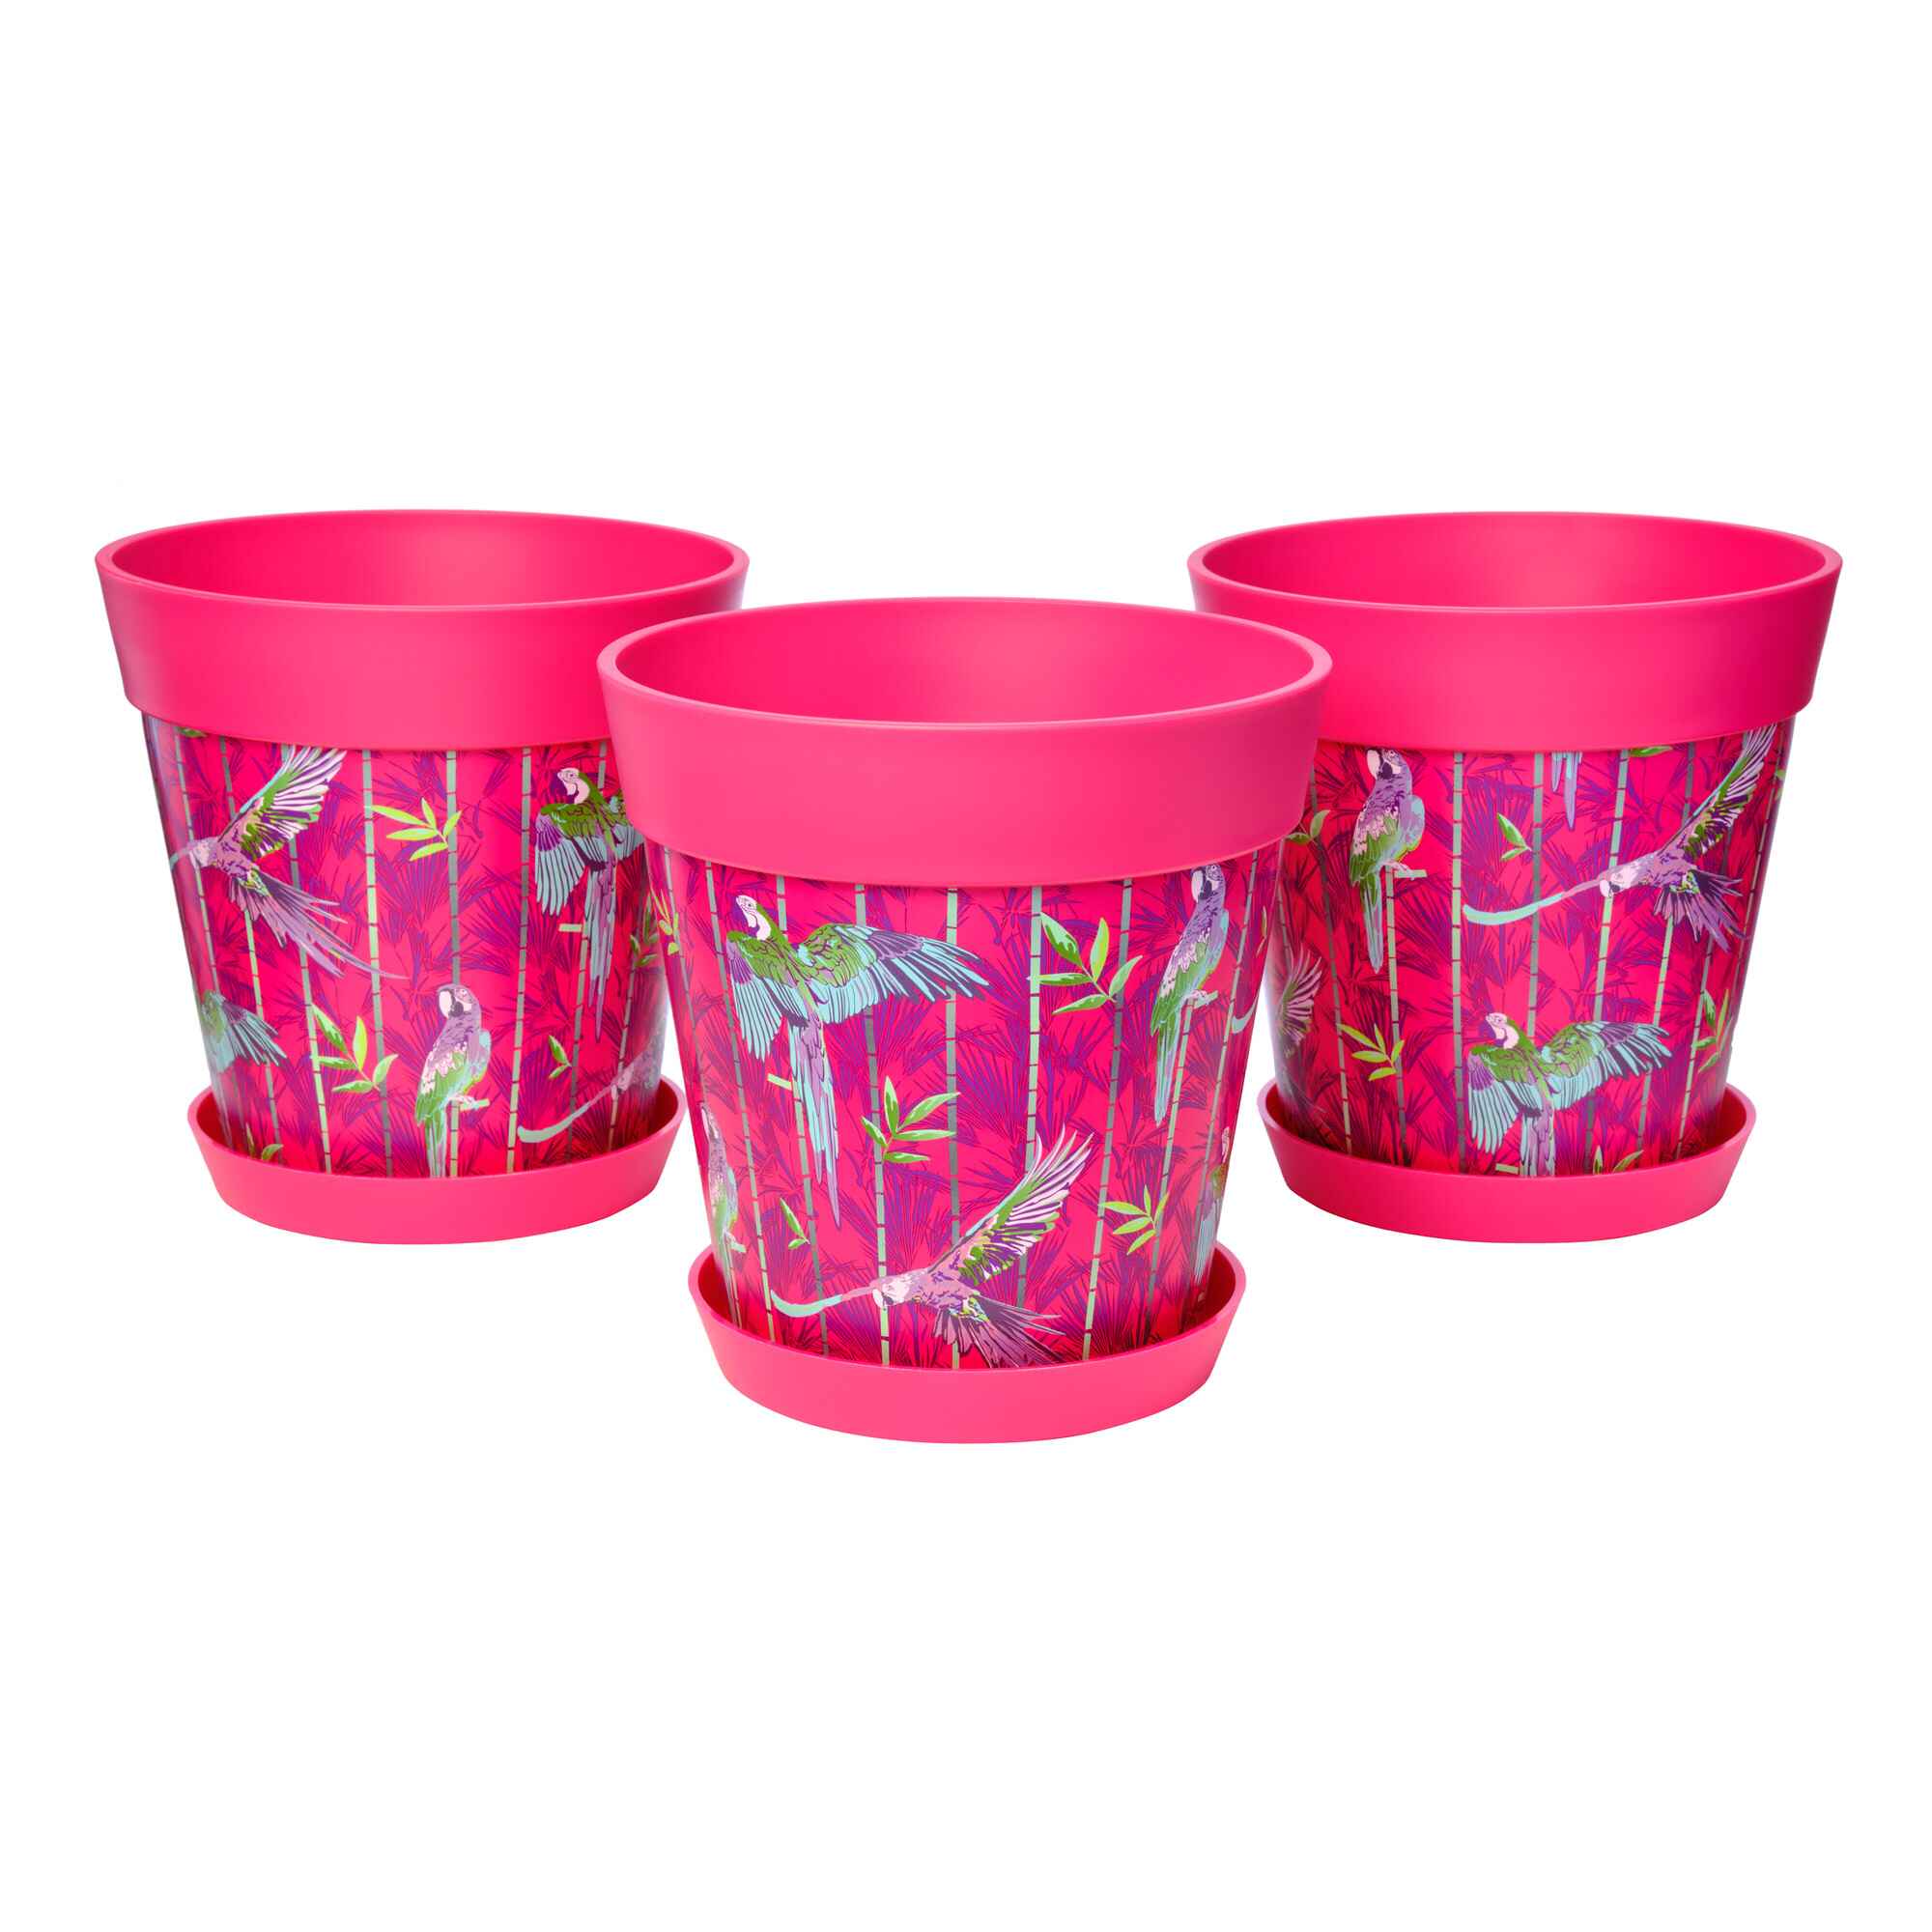 Picture of 3 Medium 22cm Plastic Pink Parrots Pattern Indoor/Outdoor Flowerpots with Saucers 